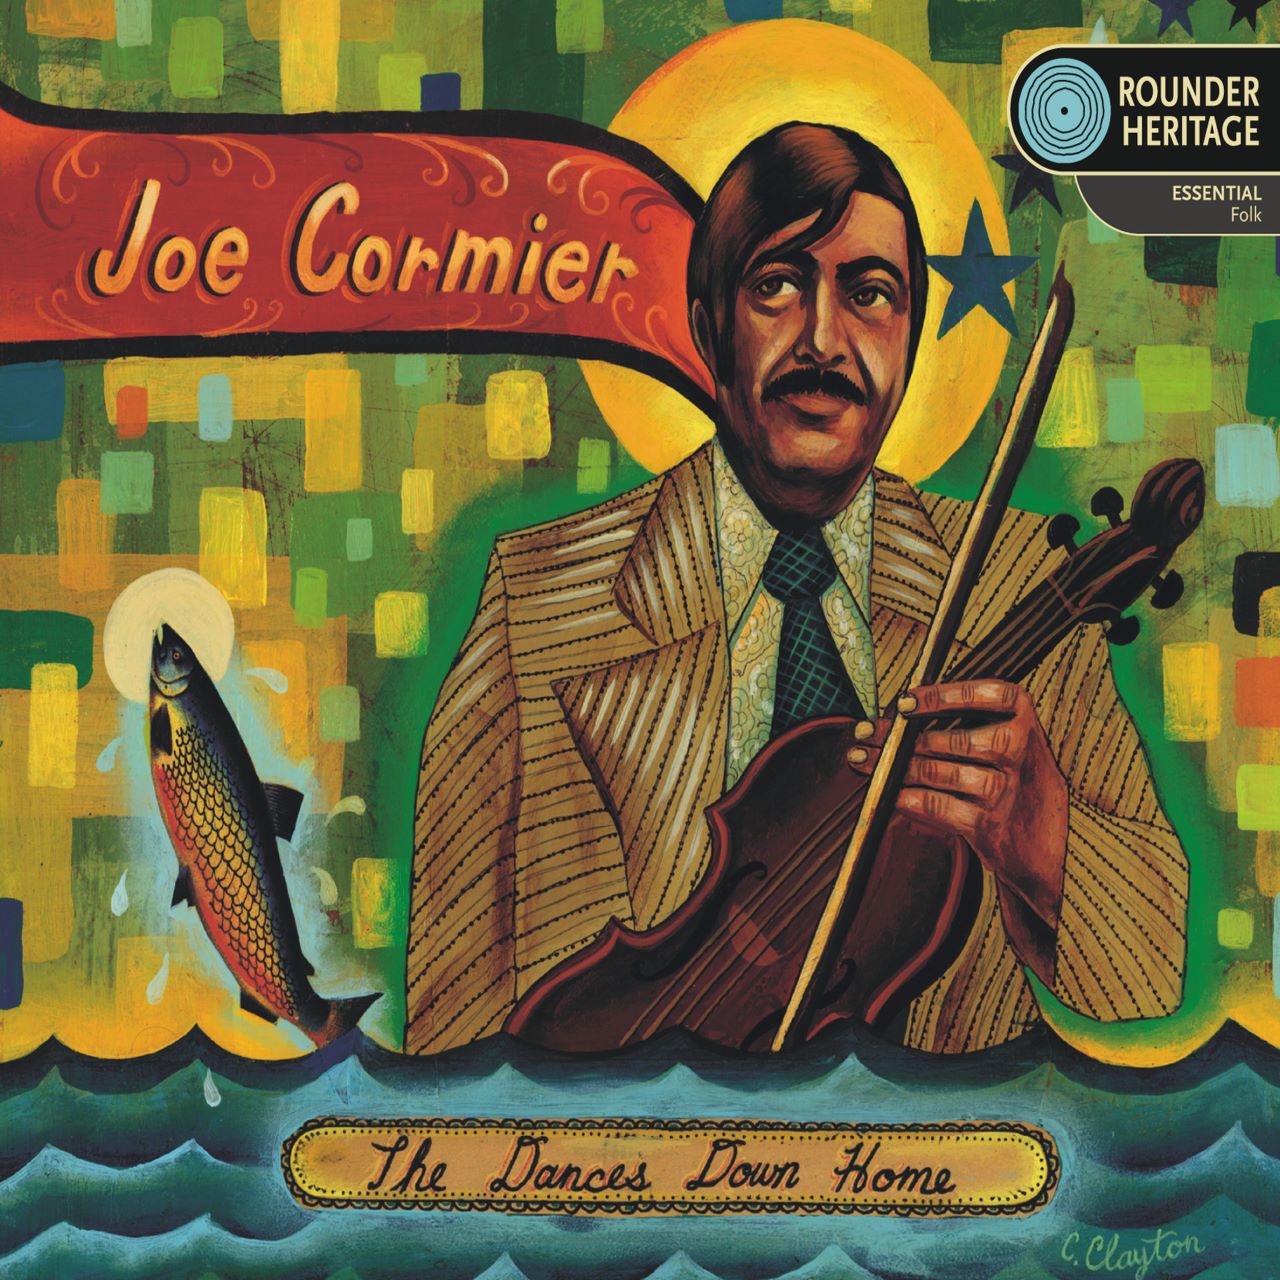 Joe Cormier - The Dances Down Home cover album